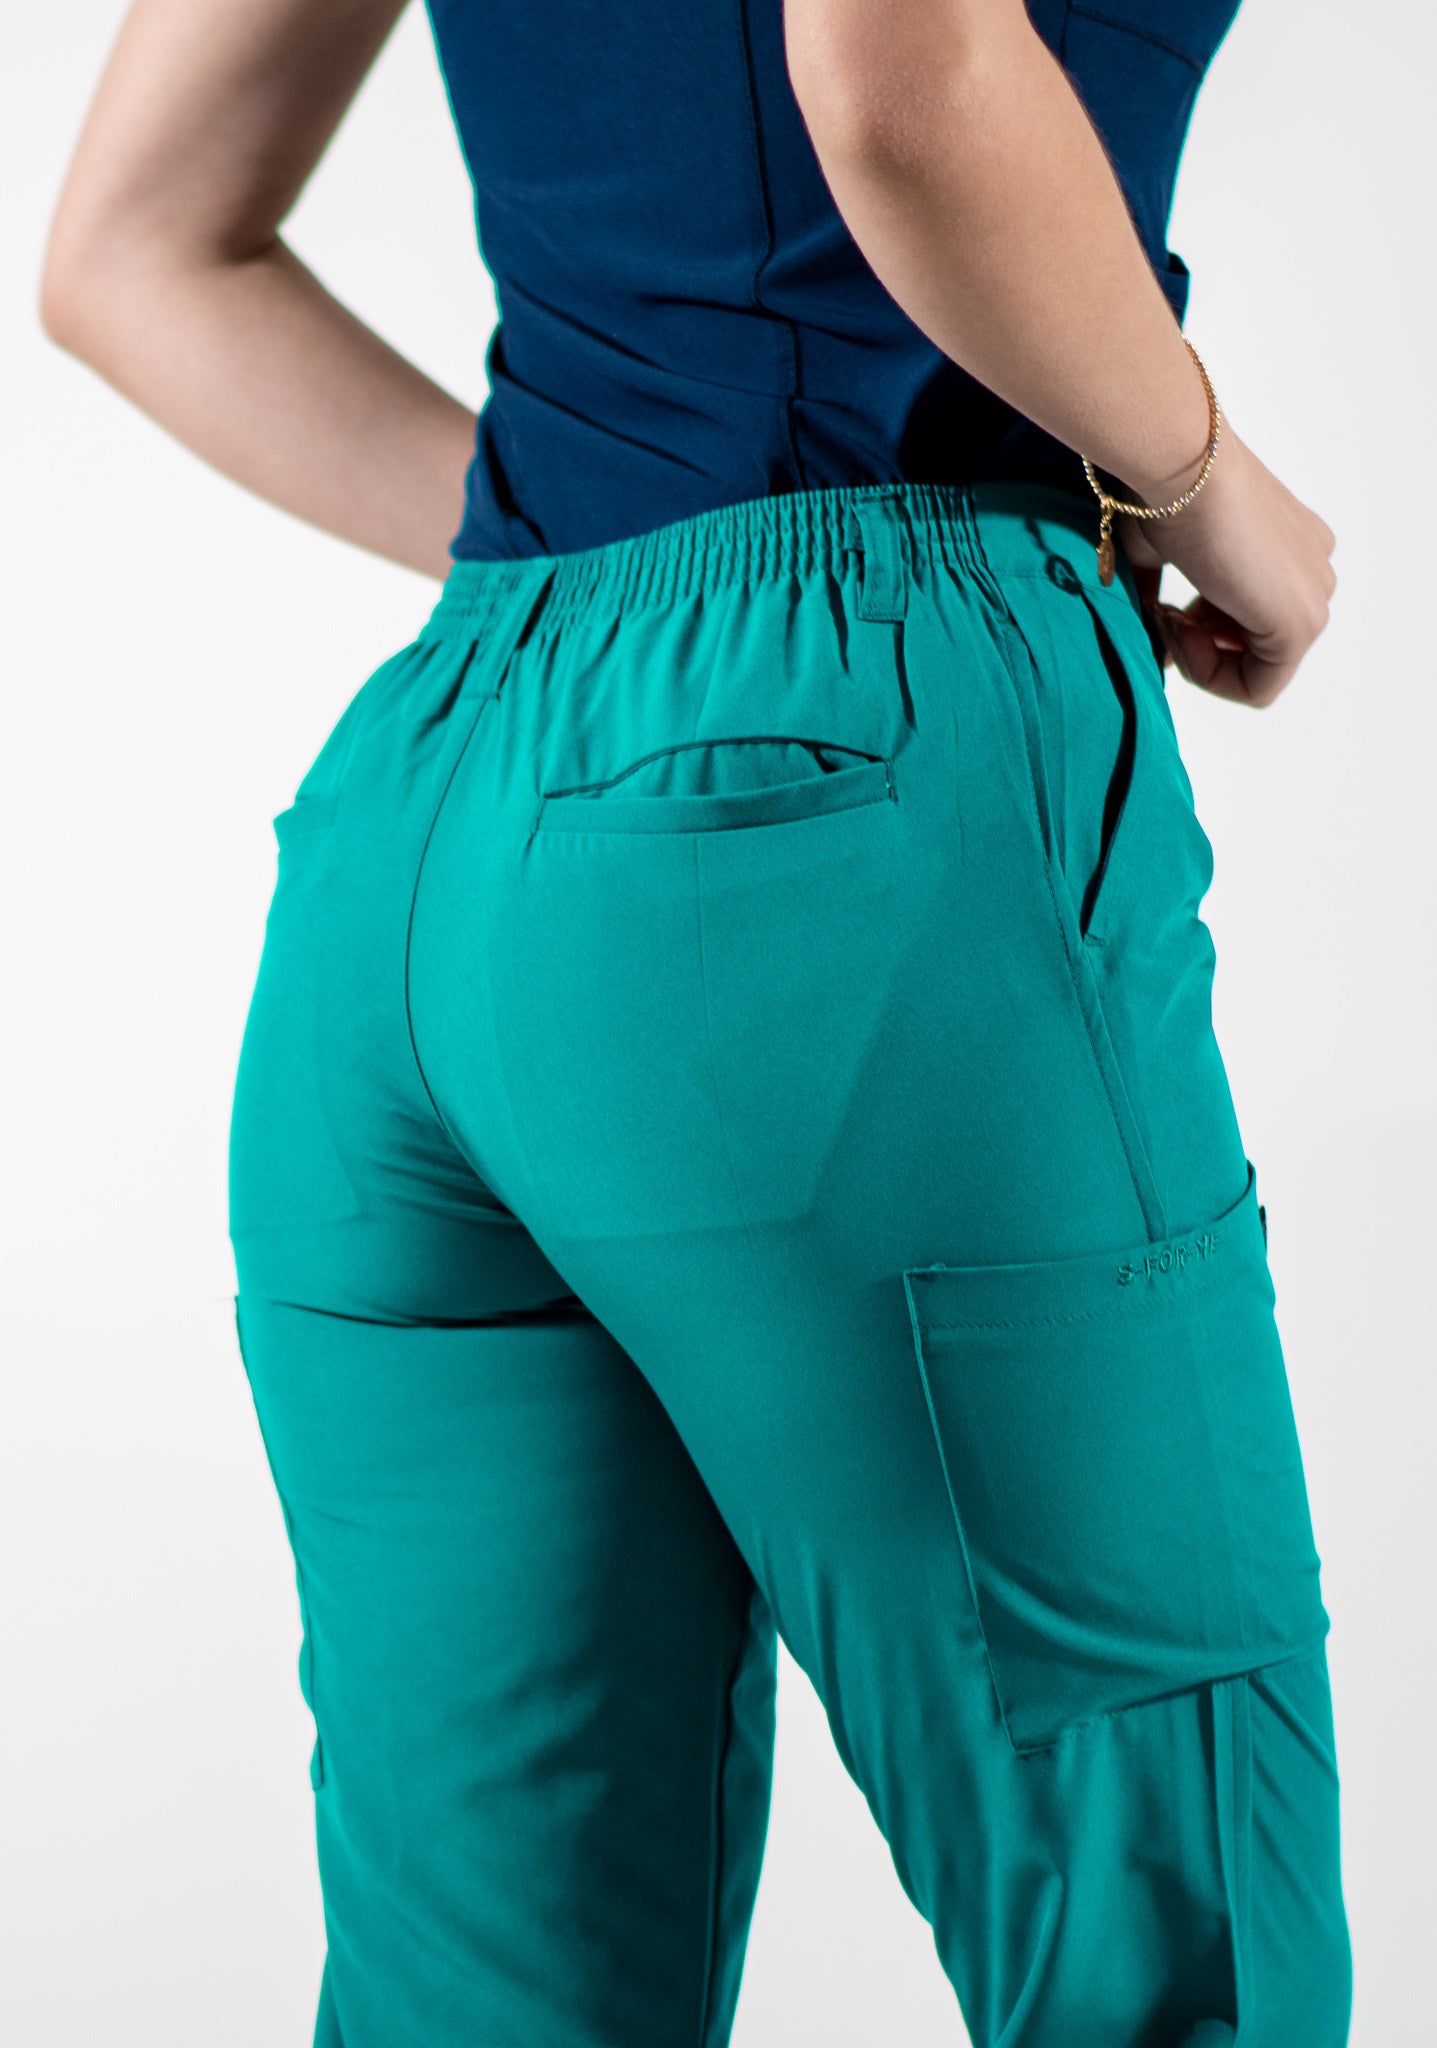 Women's pants 901 Verde Jade Four Ways